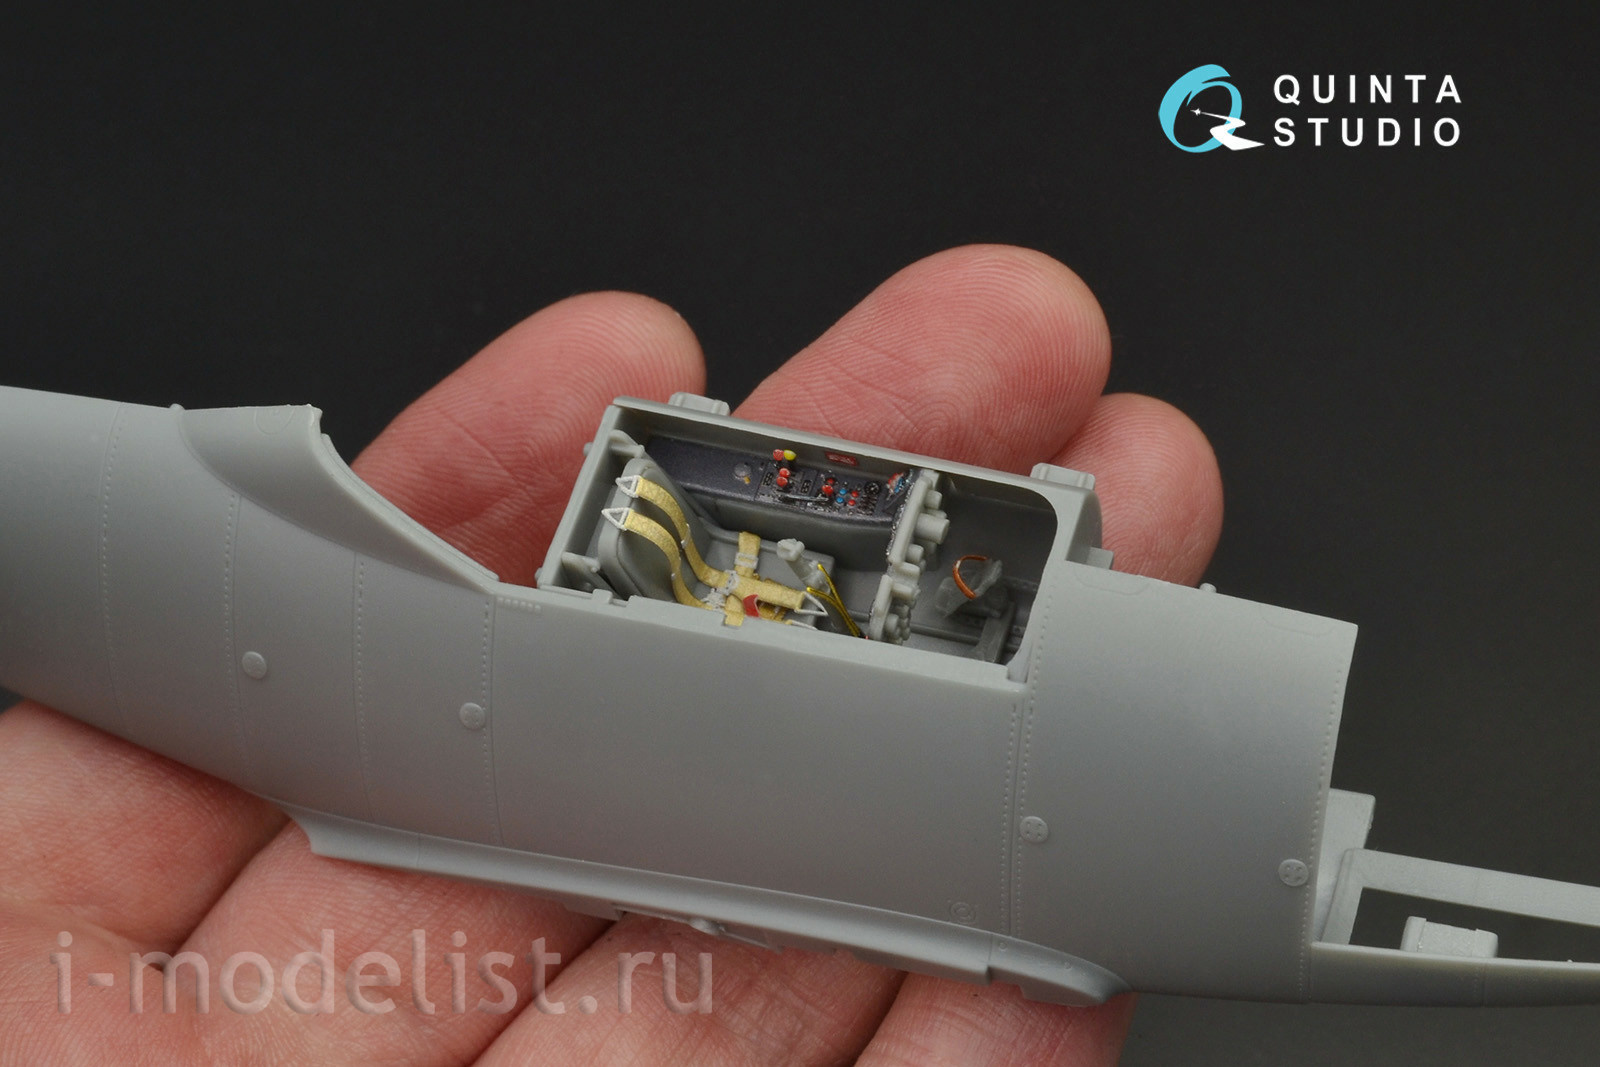 QD48089 Quinta Studio 1/48 3D Декаль интерьера кабины Me-262A (для модели HobbyBoss)